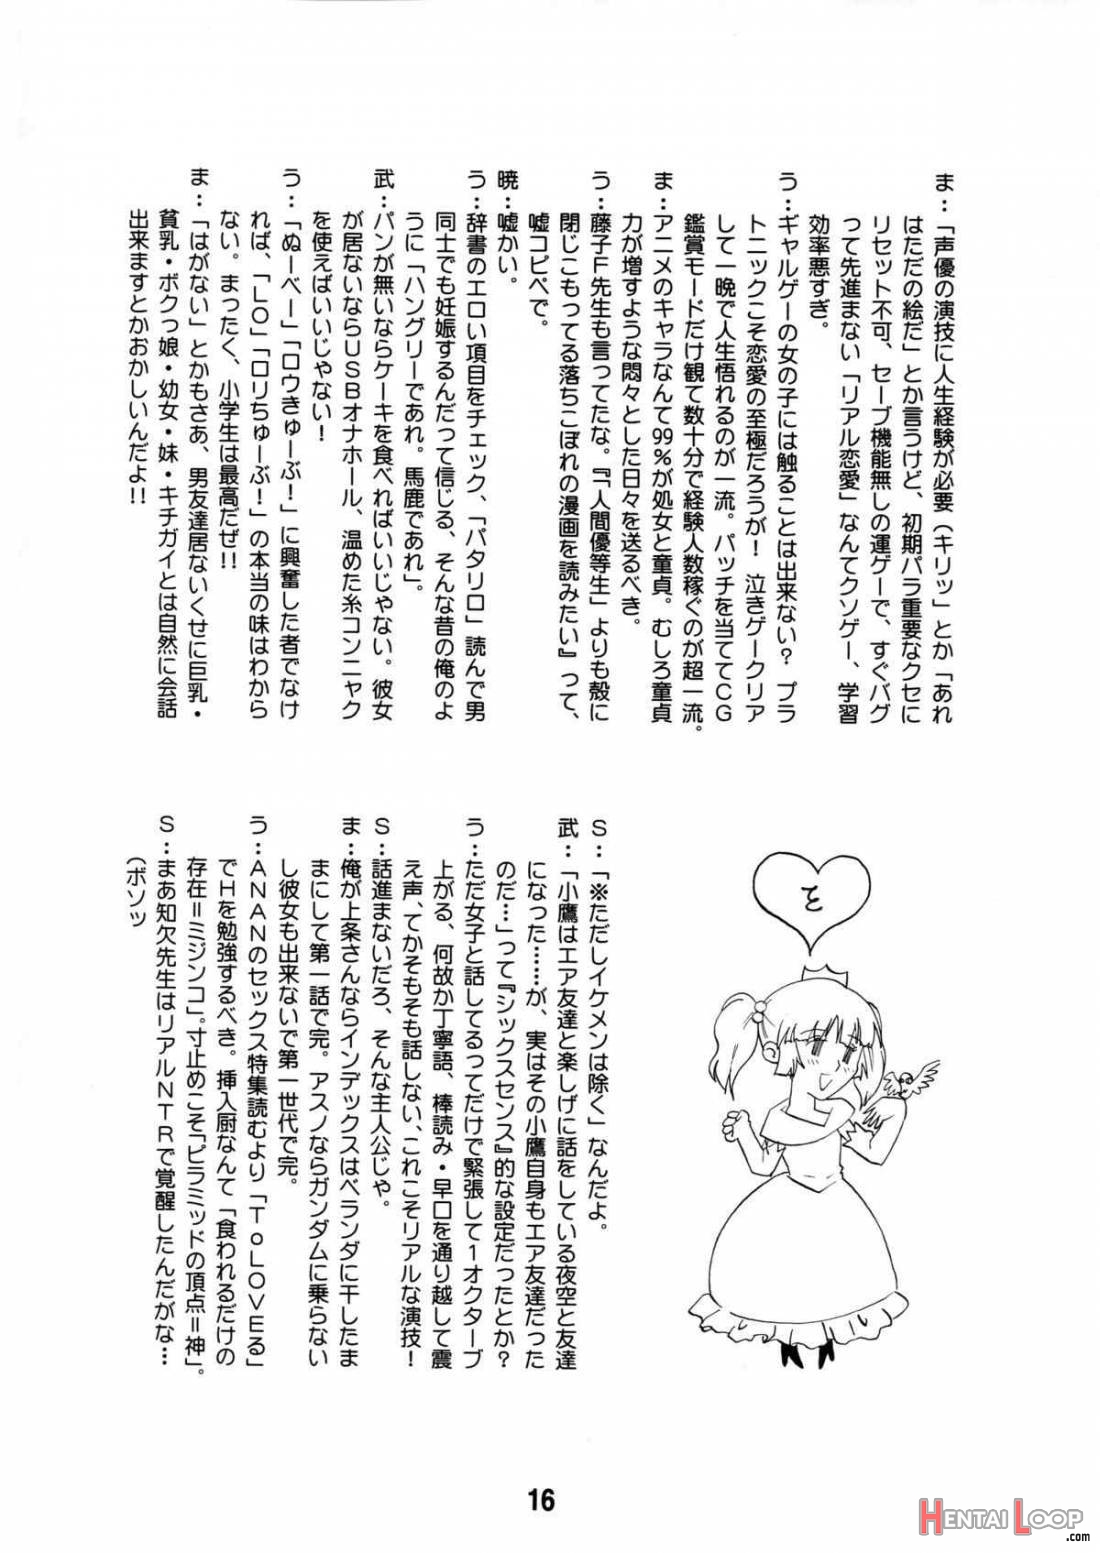 Yurarararax page 15